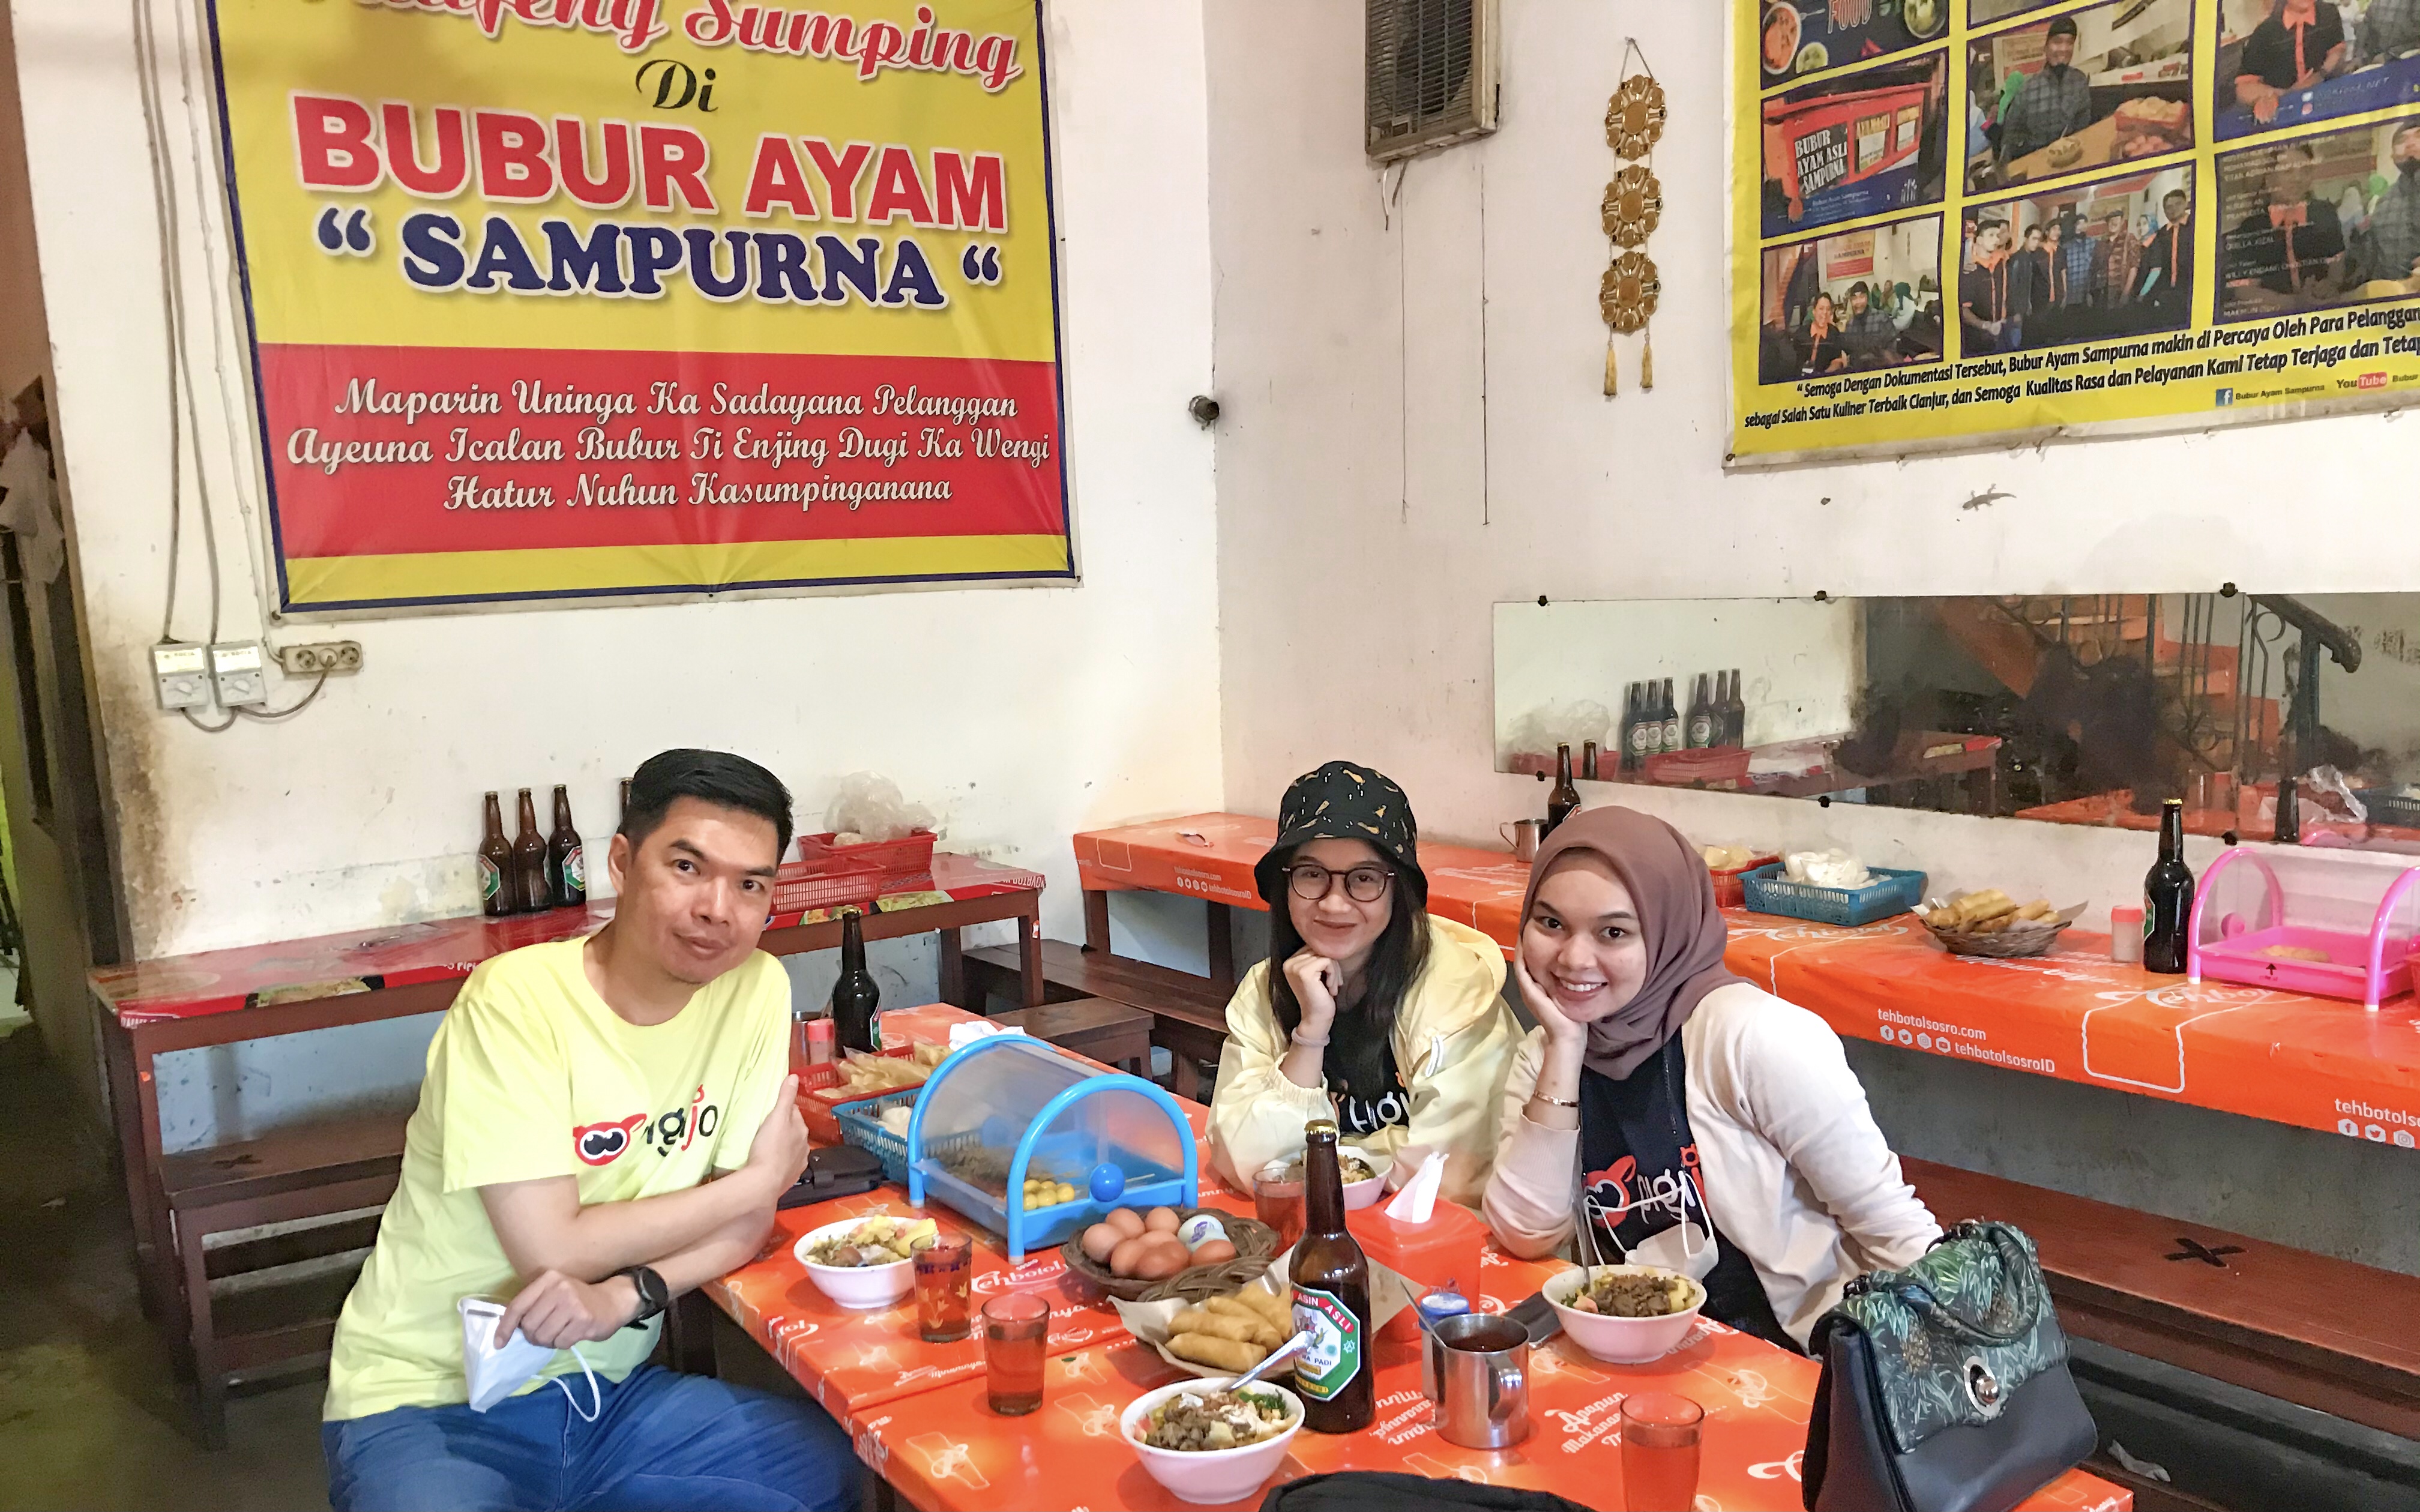 Dadakan Trip Cianjur - Bandung, Bisa Ngapain aja?